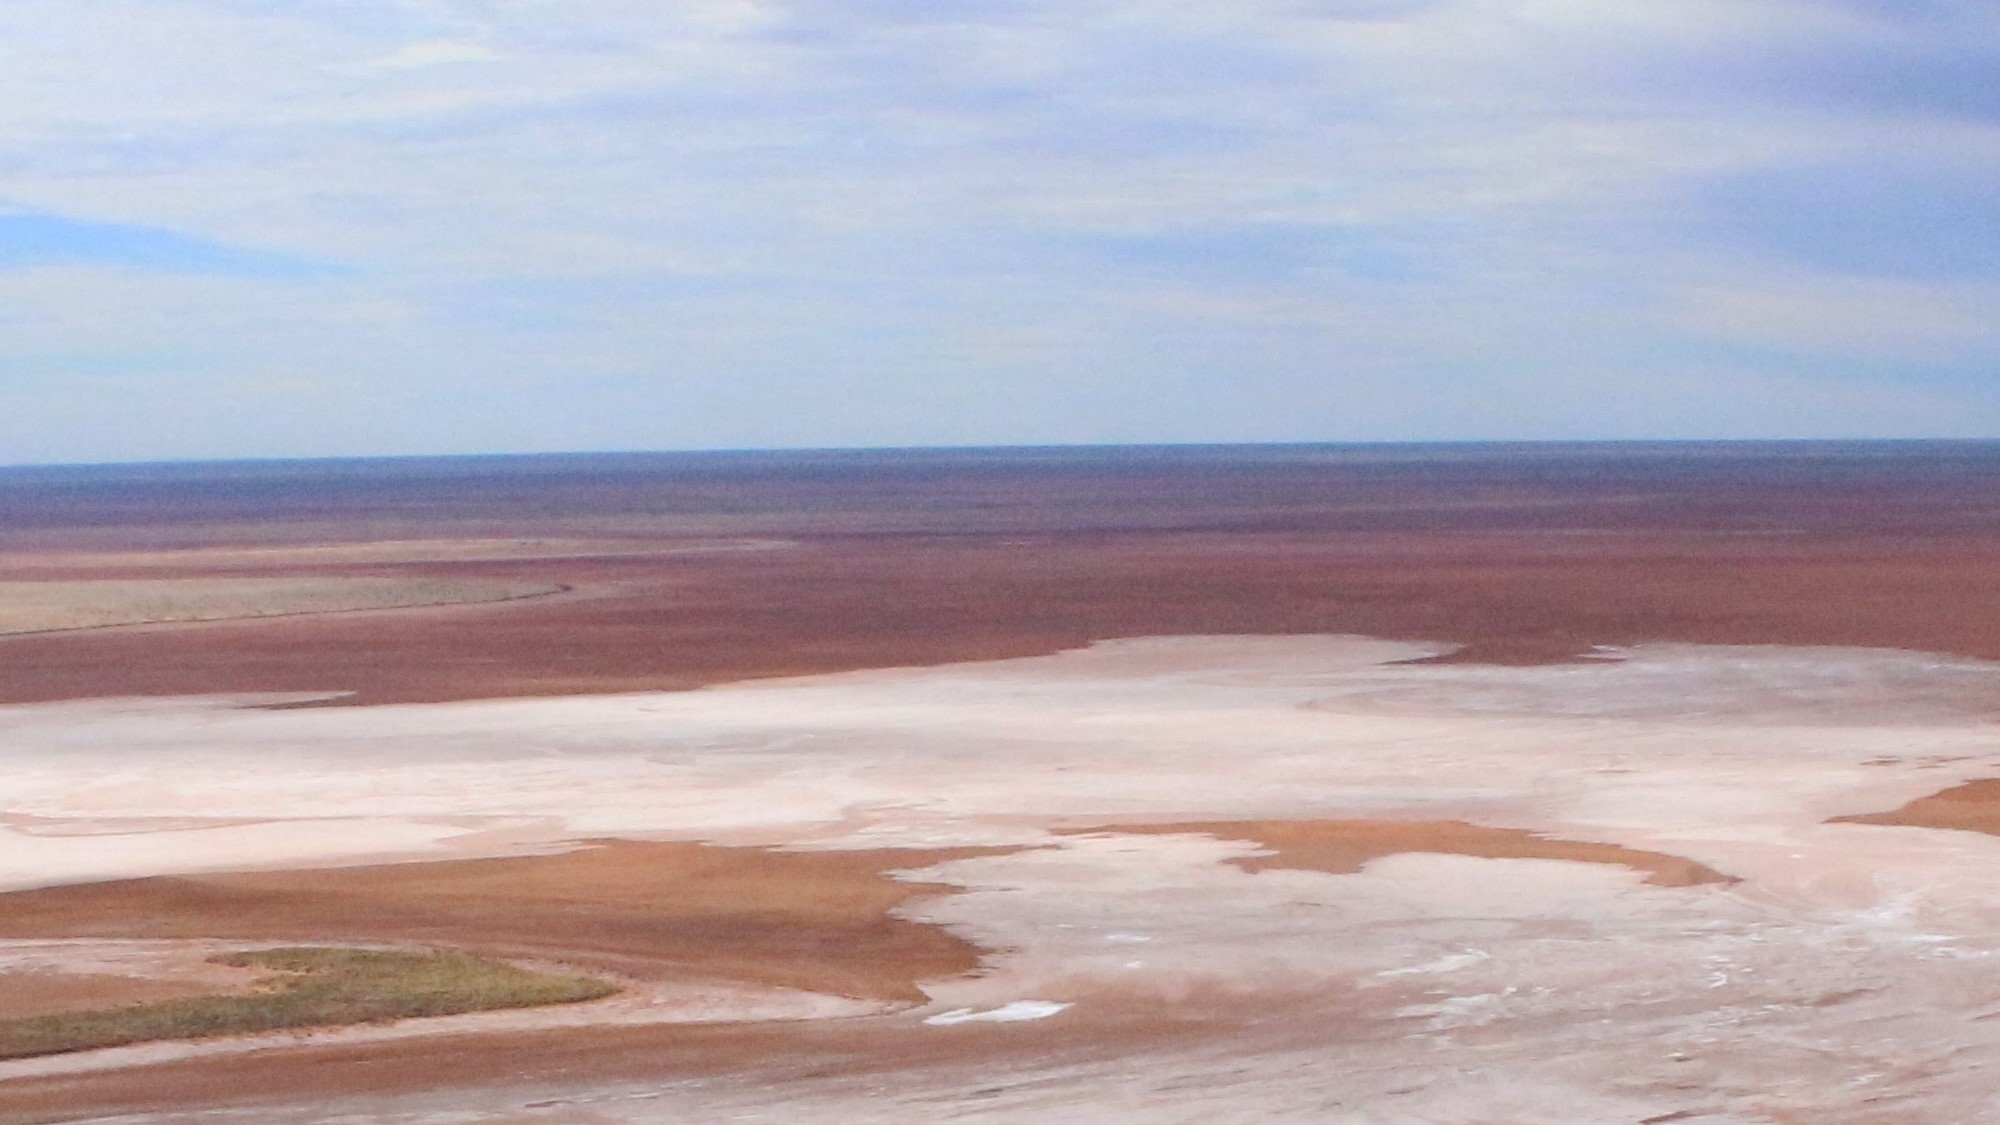 Landschaftsbild von dem Solarsalzprojekt Australien 